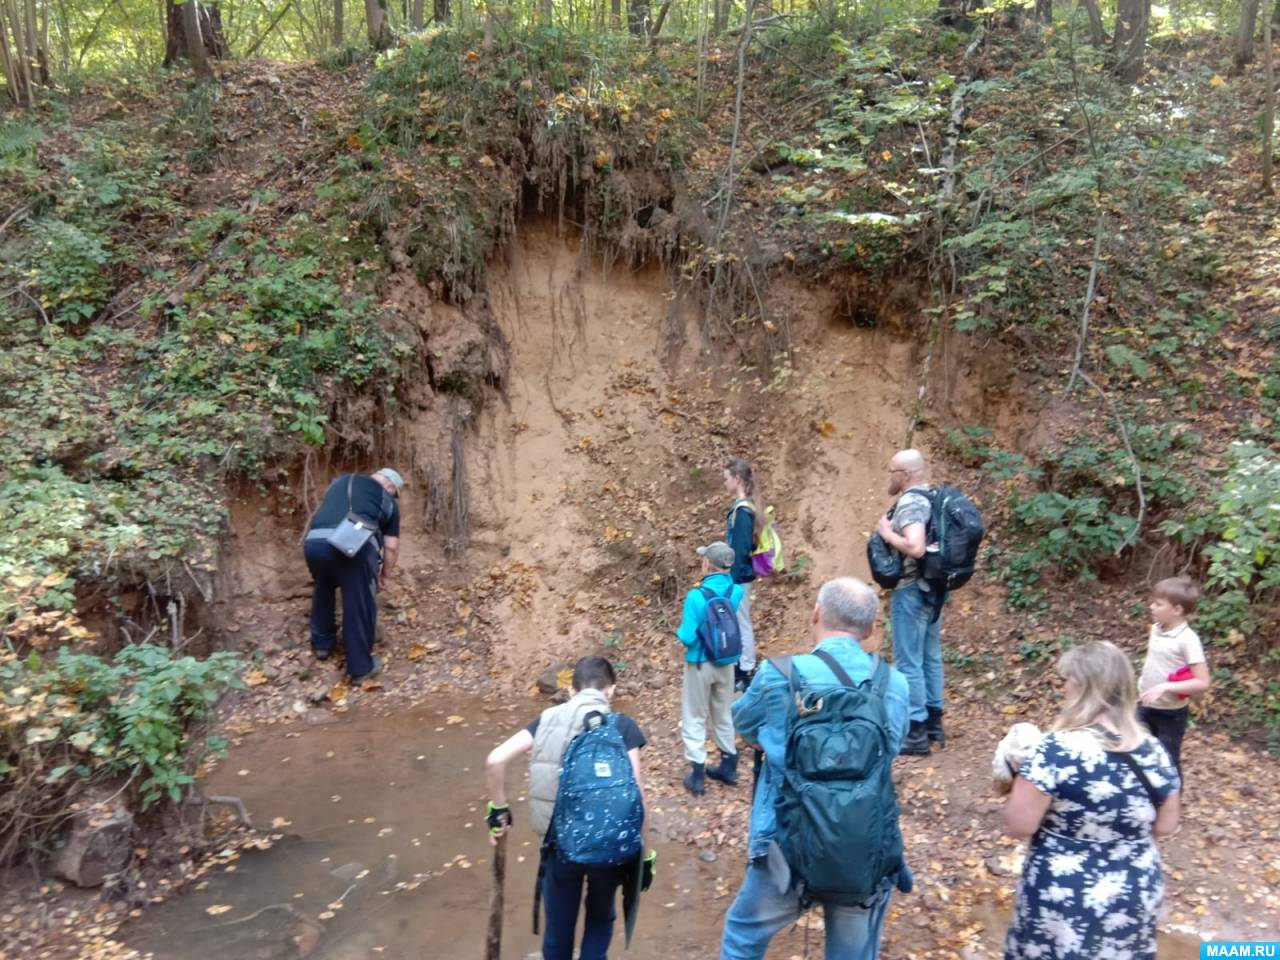 Программа школьной геологической экскурсии в Битцевском парке